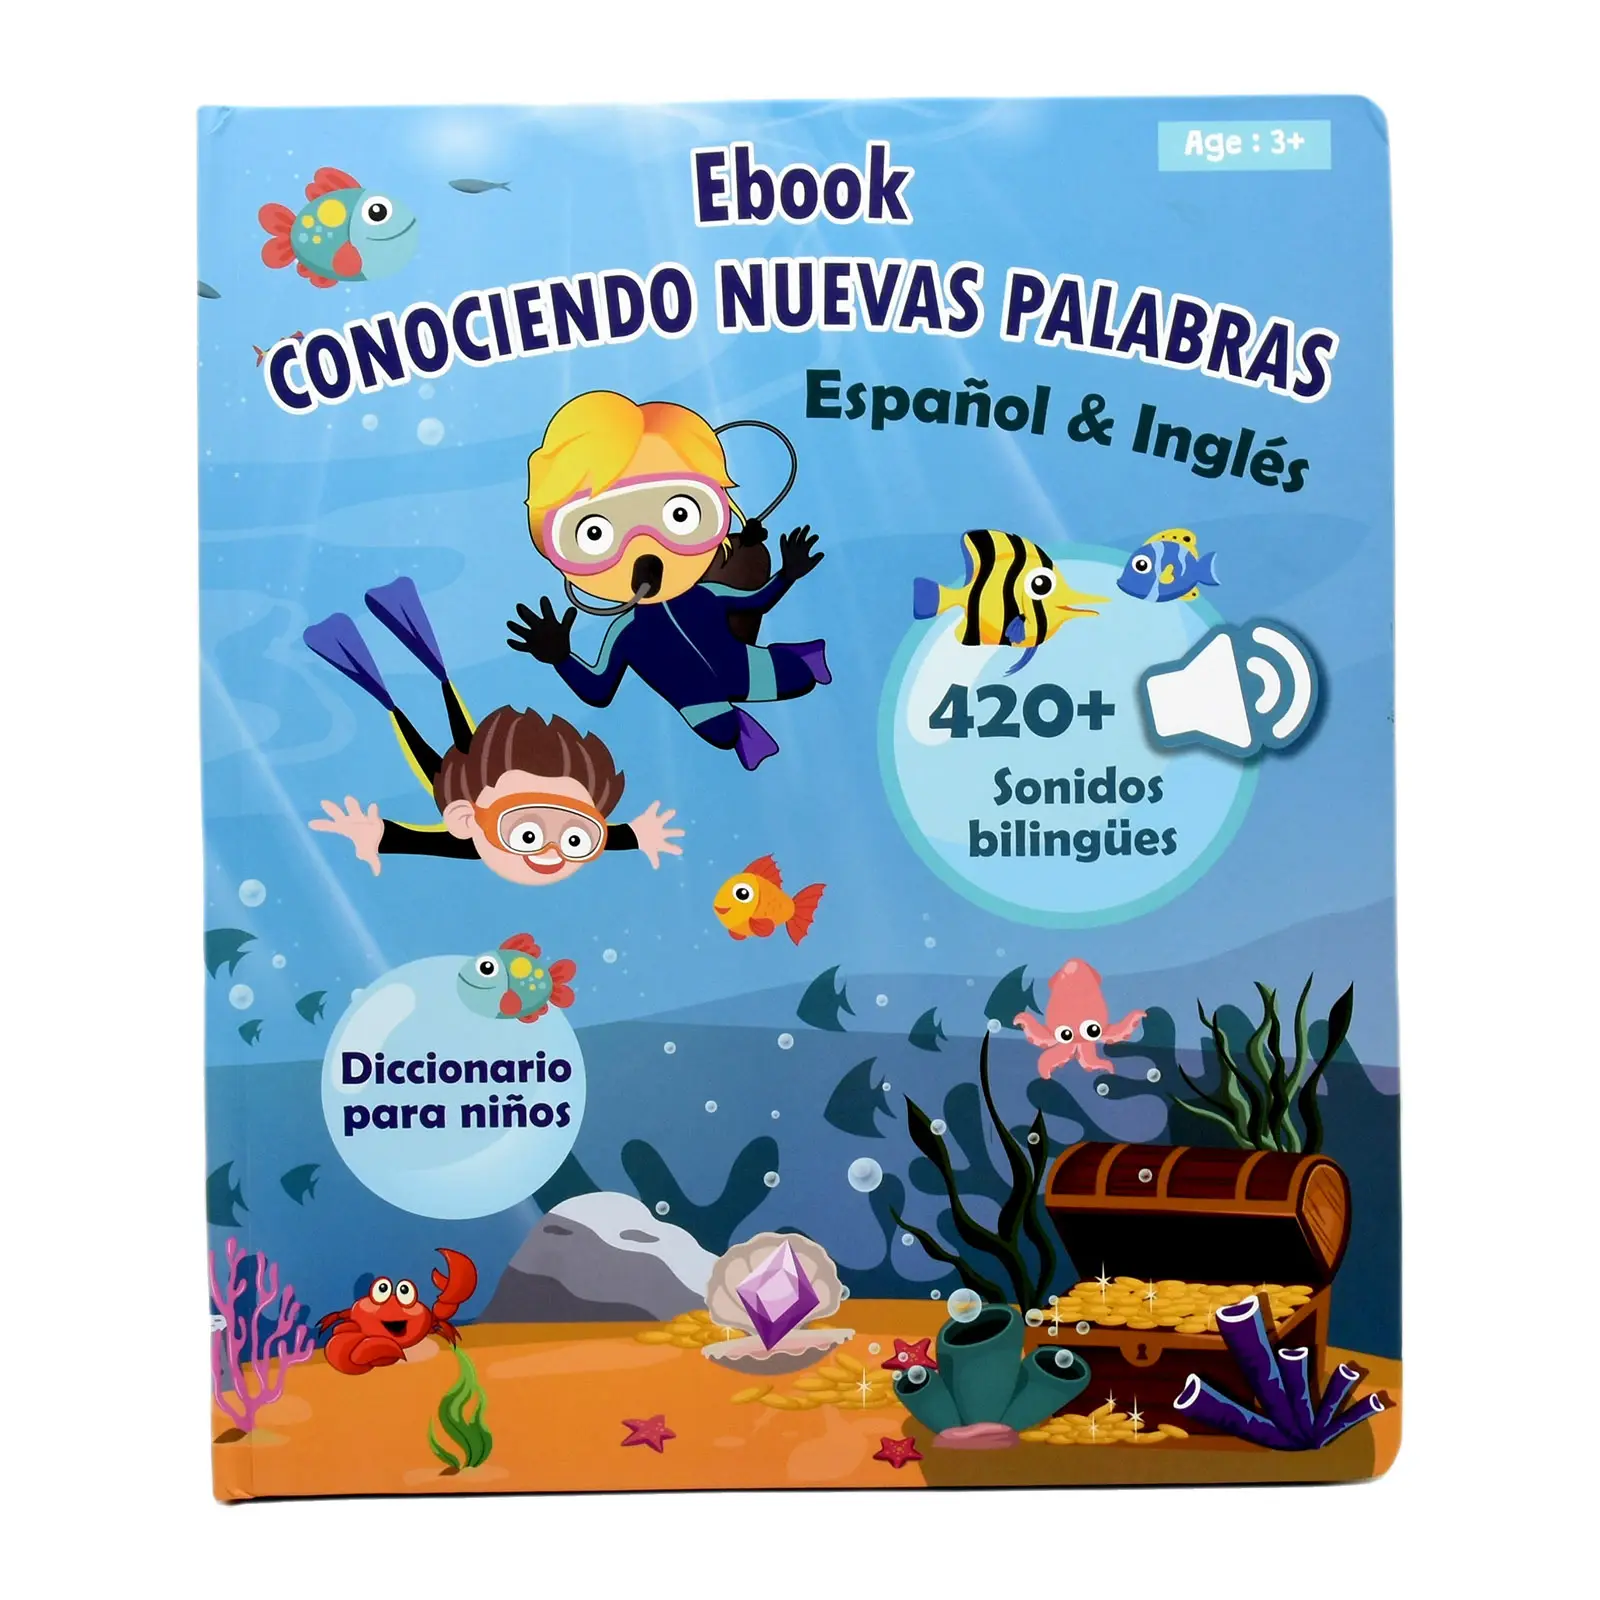 لعبة تعليمية إنجليزية إسبانية ثنائية اللغات للتعلم المبكر لعبة تعليمية تحدث للأطفال كتاب إلكتروني صوتي للأطفال